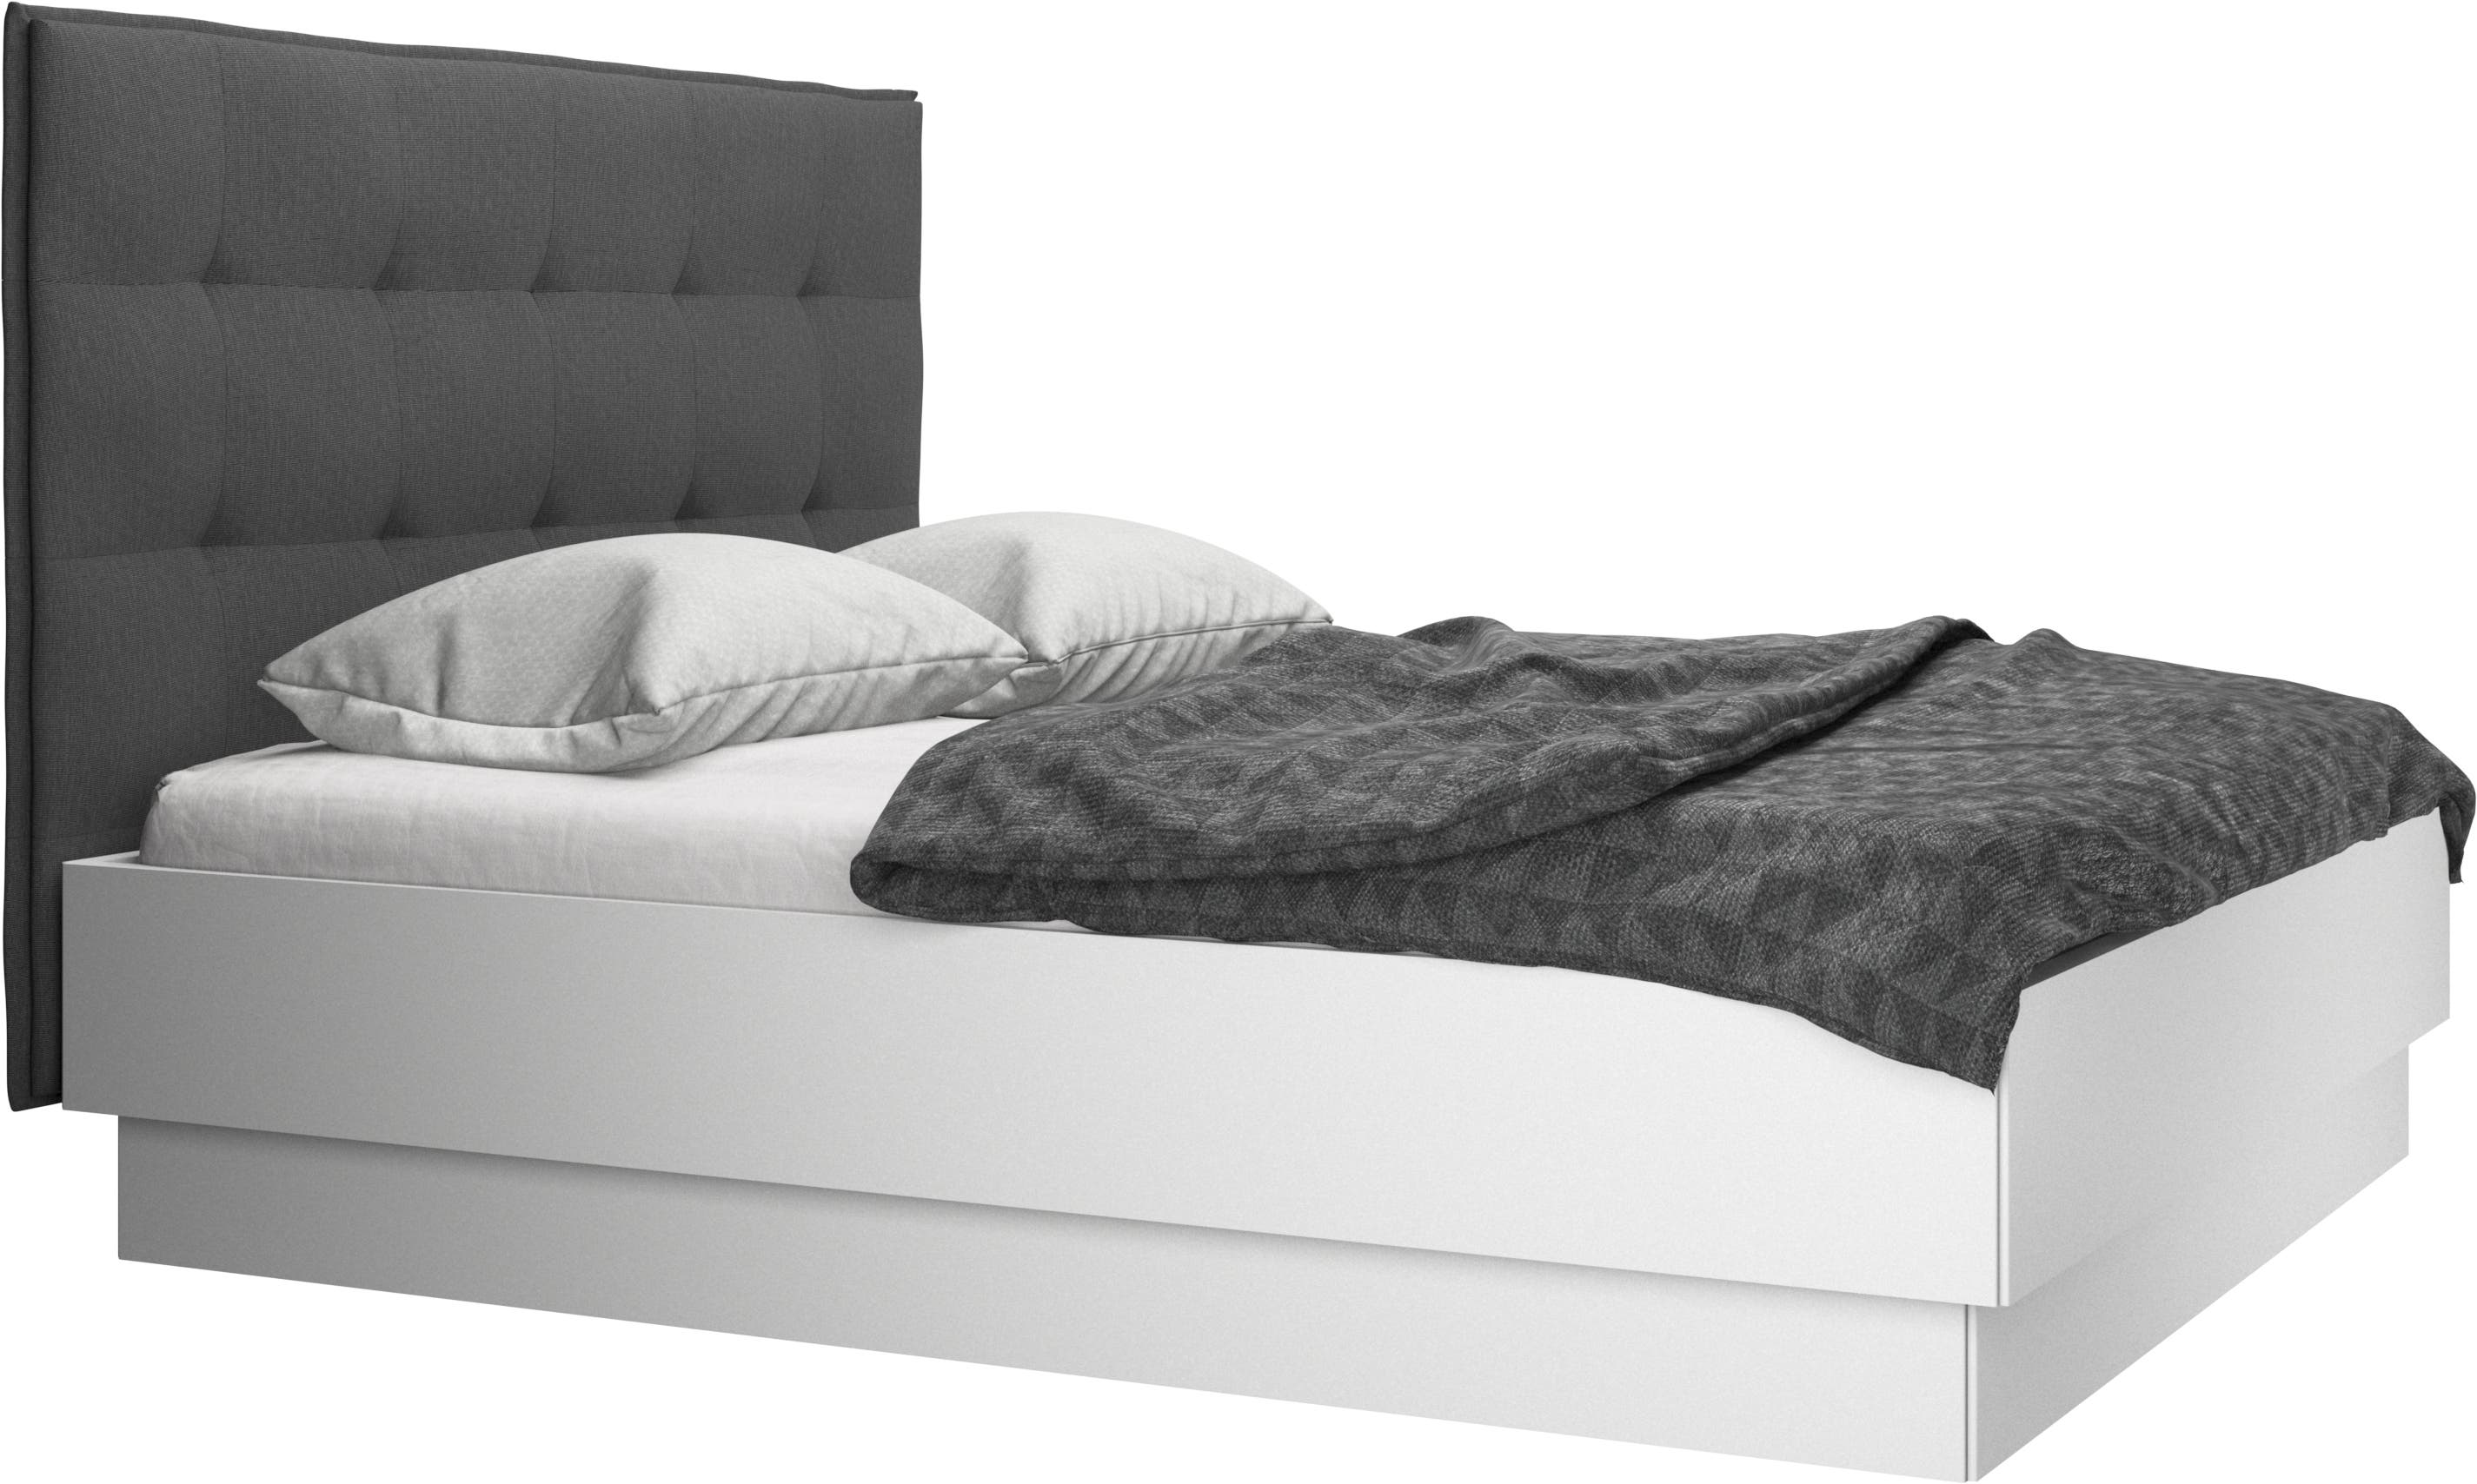 Lugano oppbevaringsseng med løftbar sengebunn, ekskl. madrass.